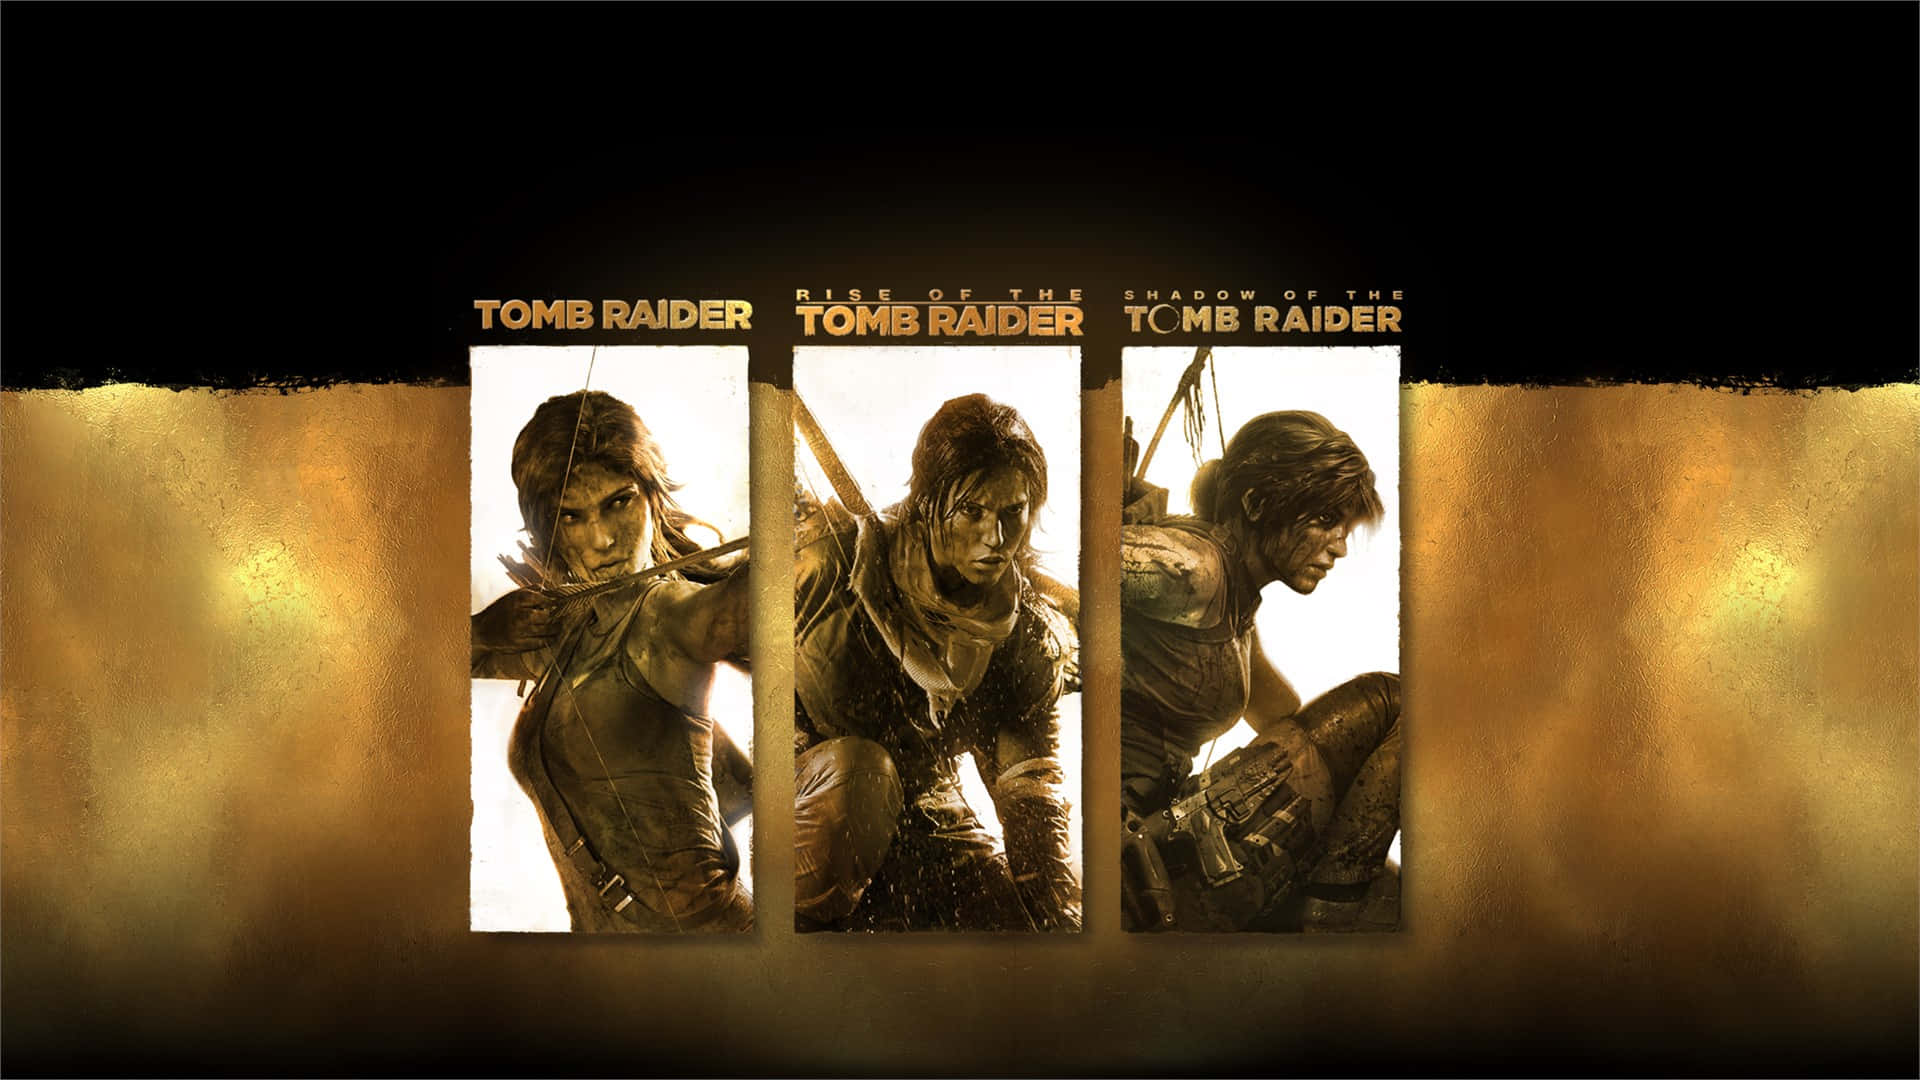 Lara Croft begynder at nå nye højder i det bedste Shadow of the Tomb Raider